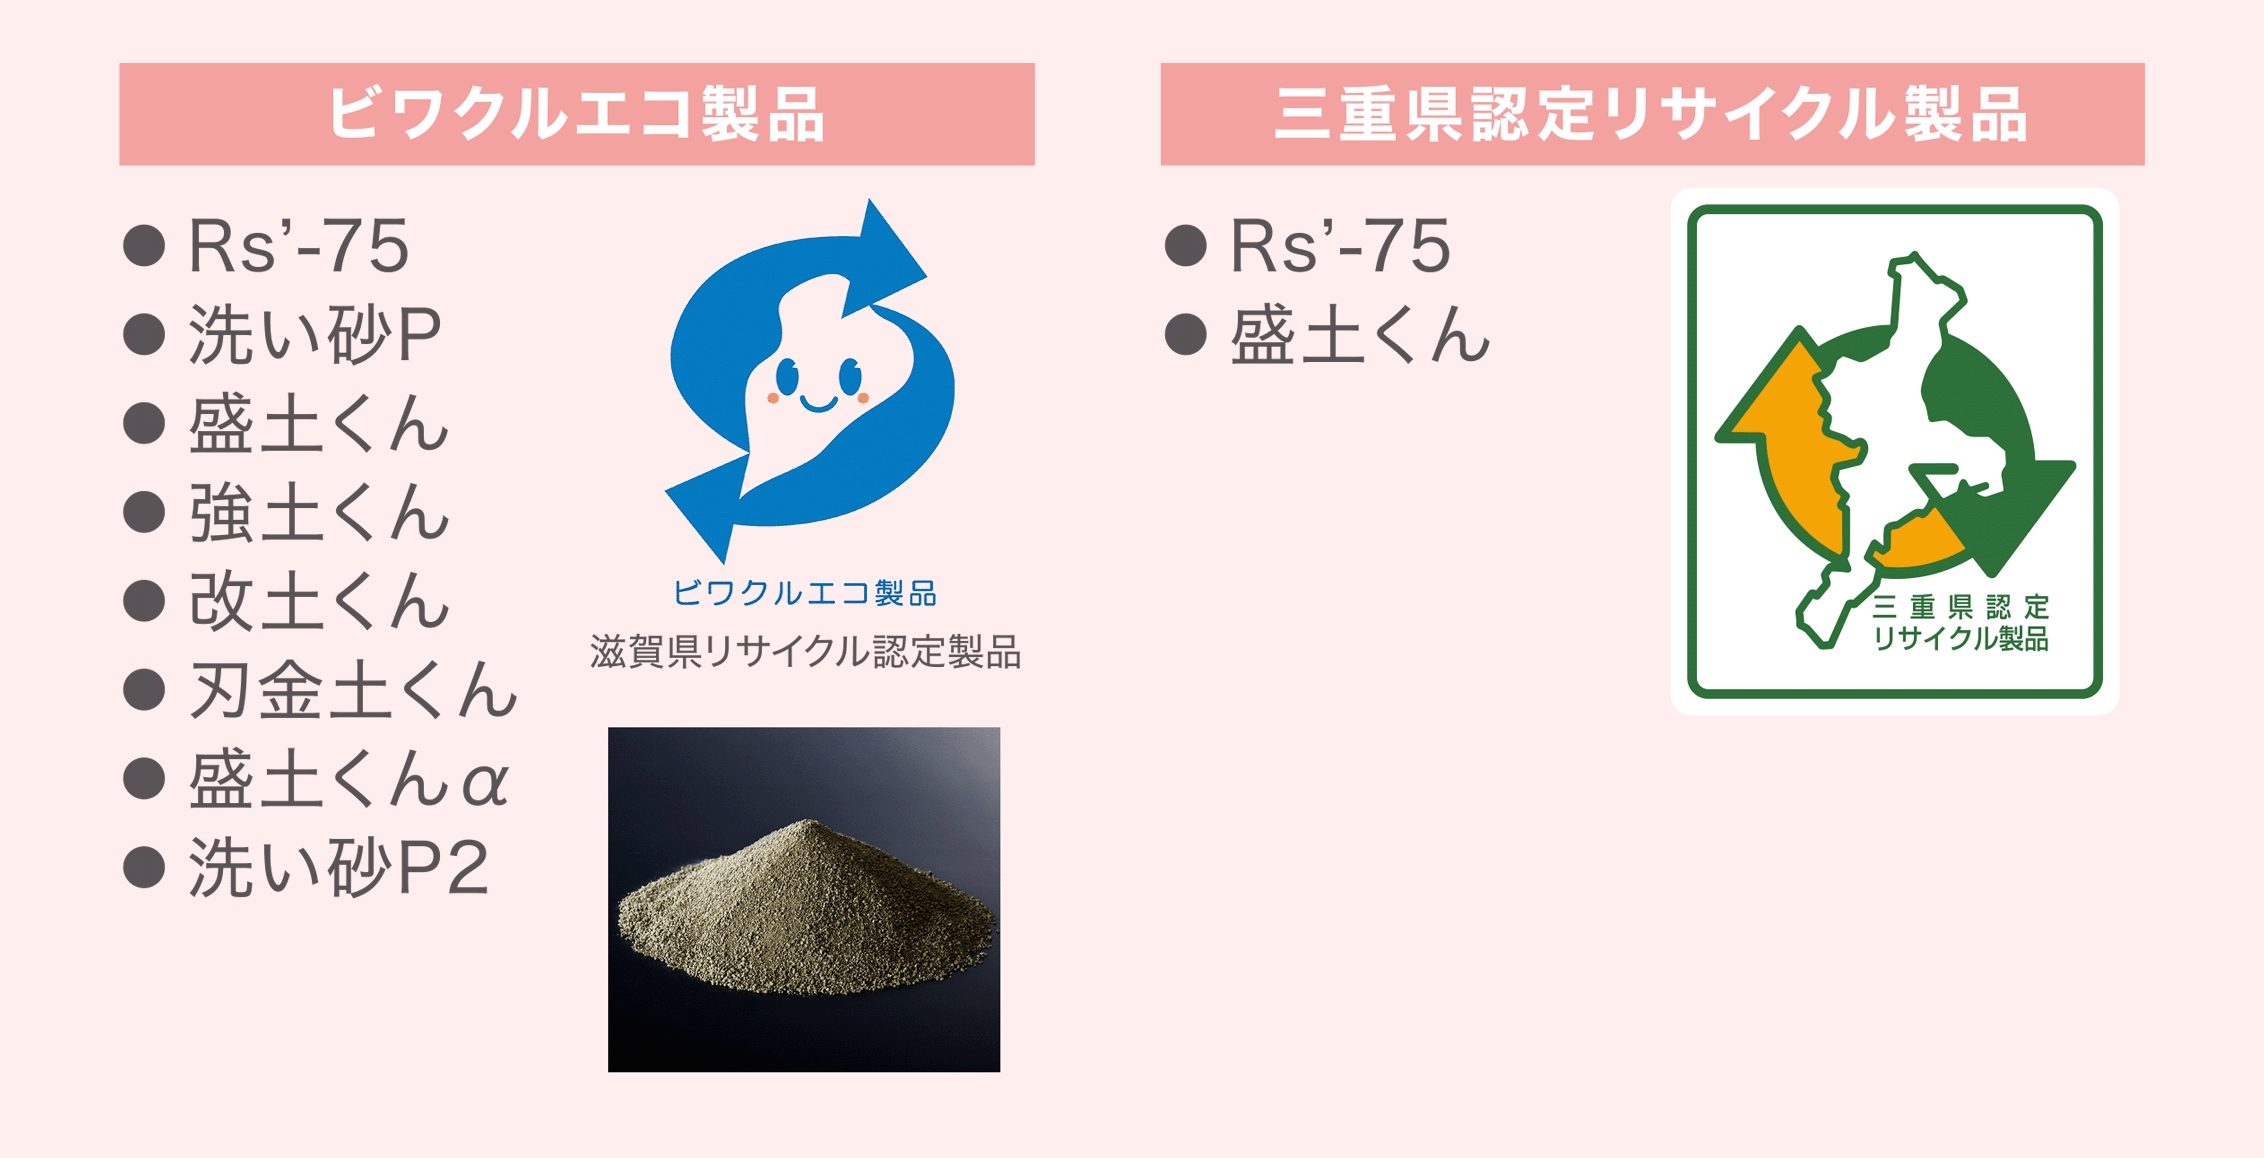 「滋賀県リサイクル認定製品」と「三重県認定リサイクル製品」の認定を受けております